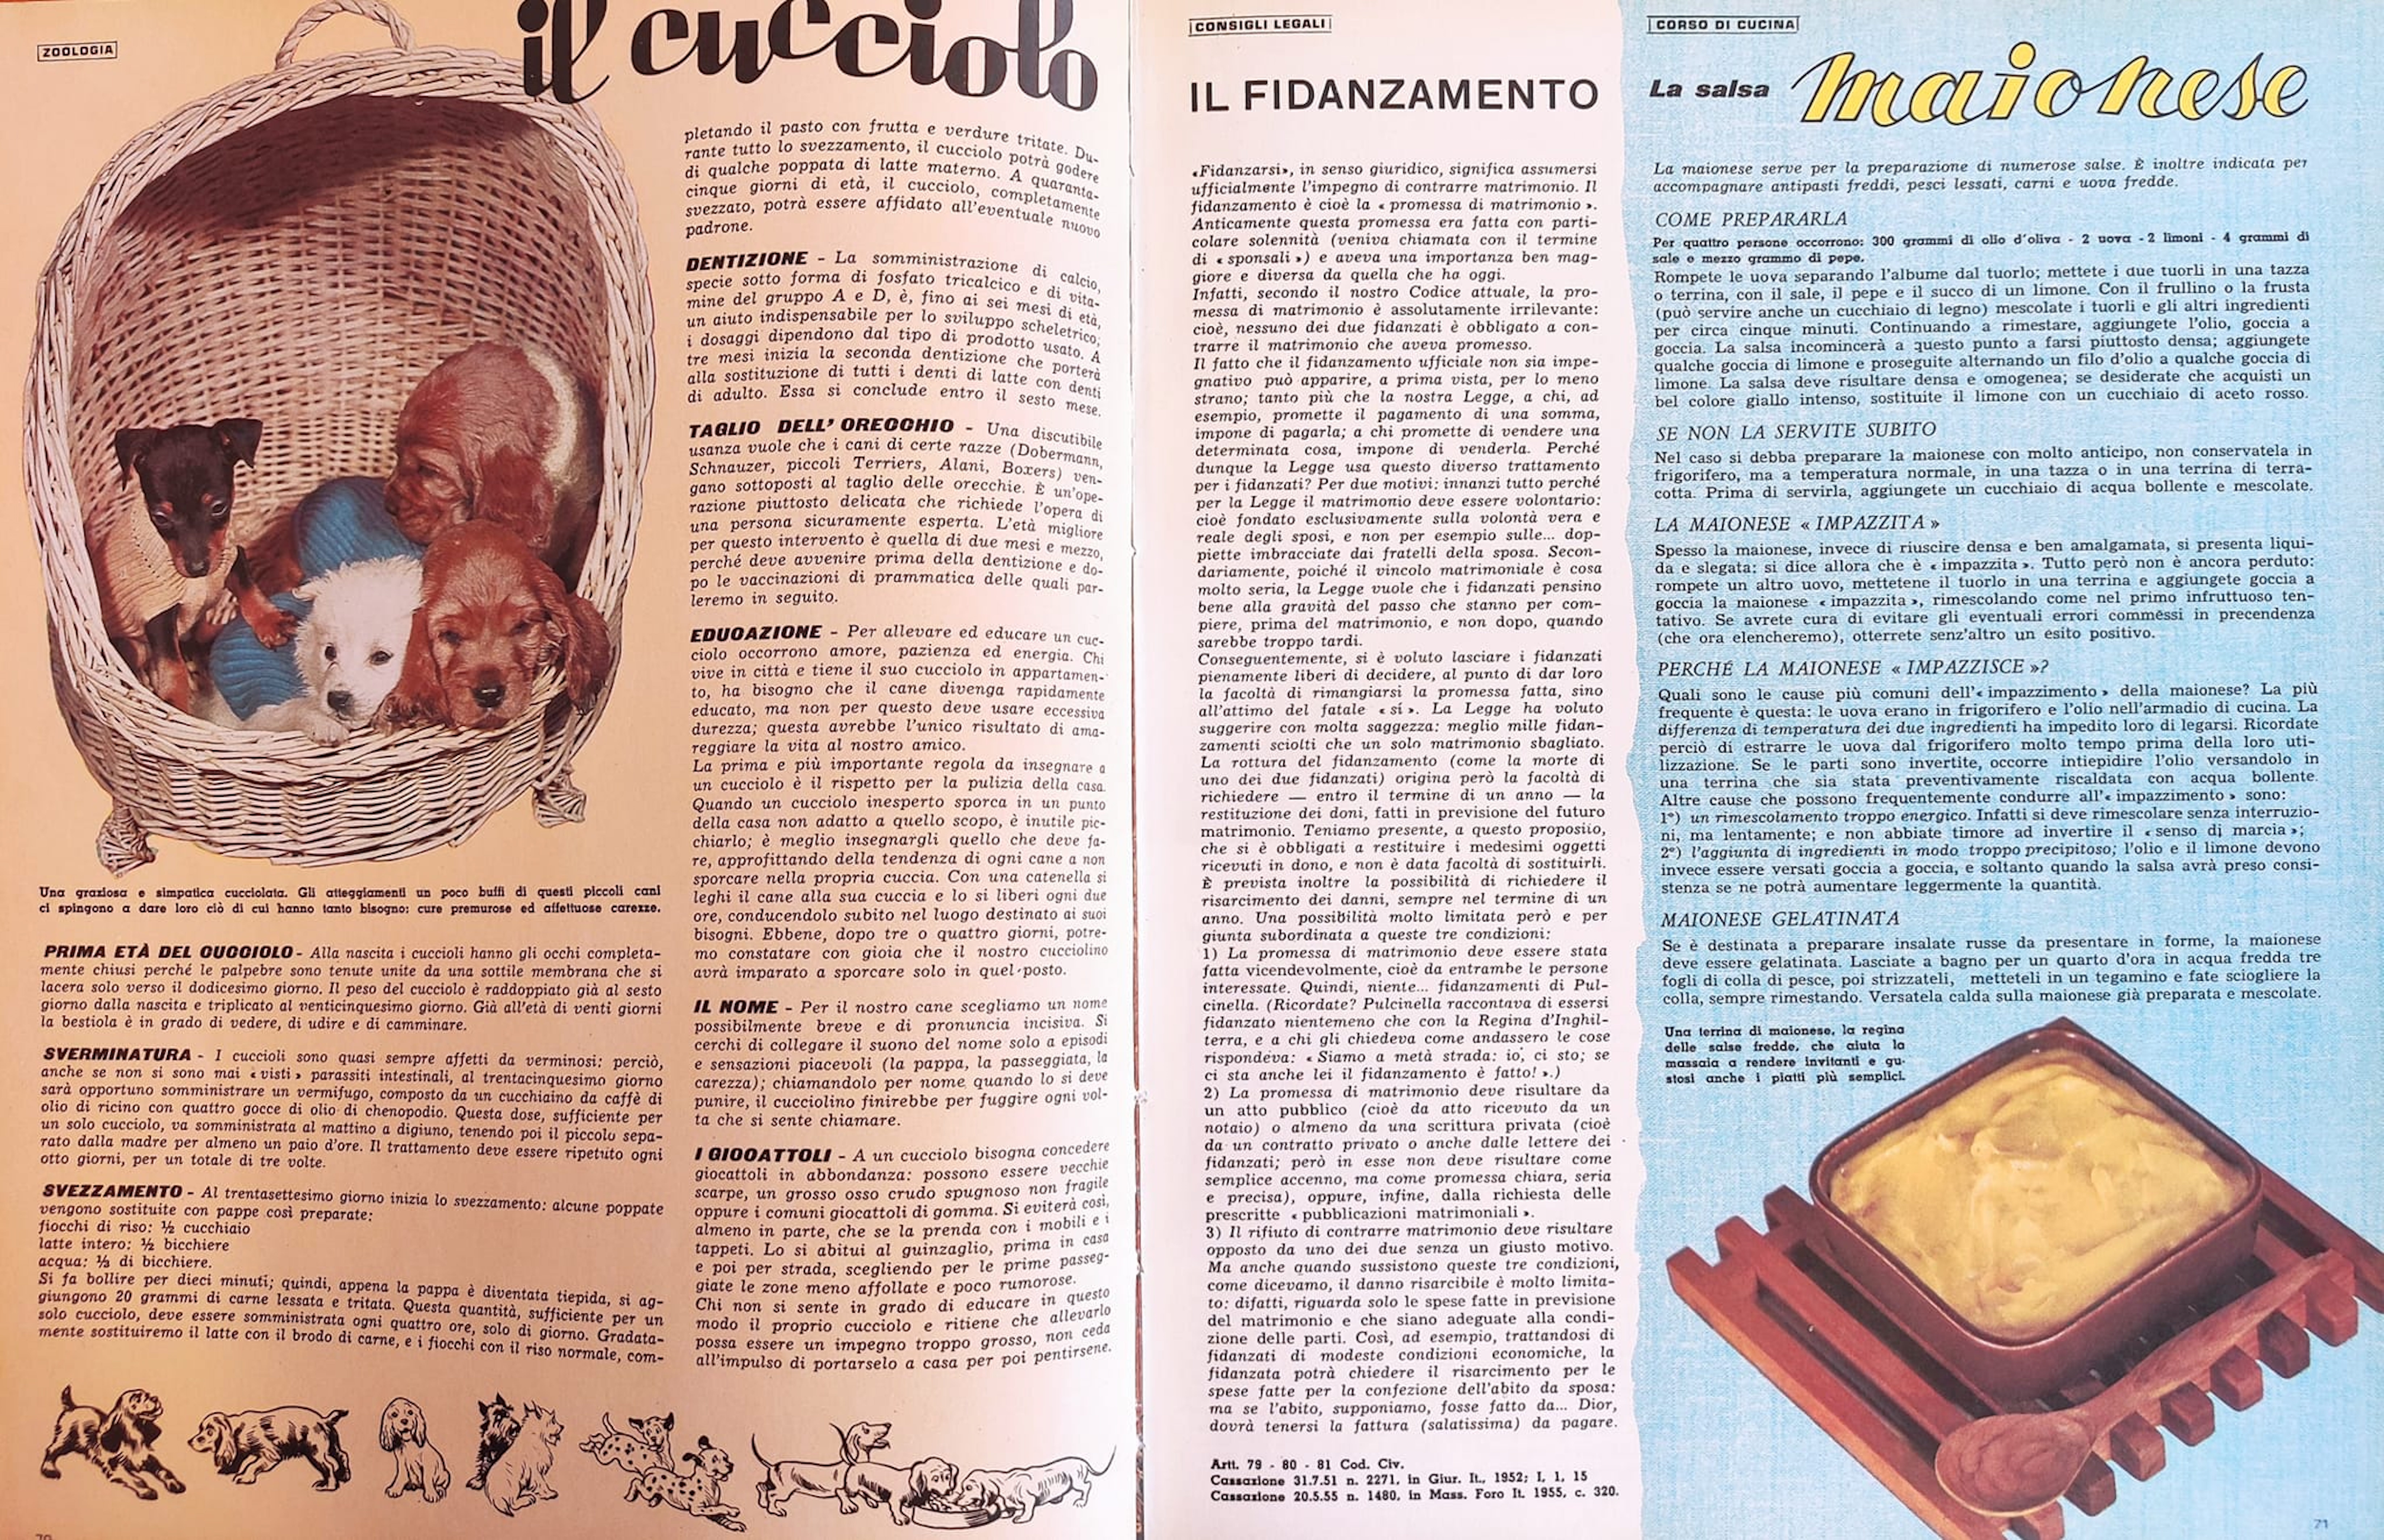 Fig. 2: Enciclopedia della donna, Milano, Fabbri Editori, 1963, pp. 70-71.
